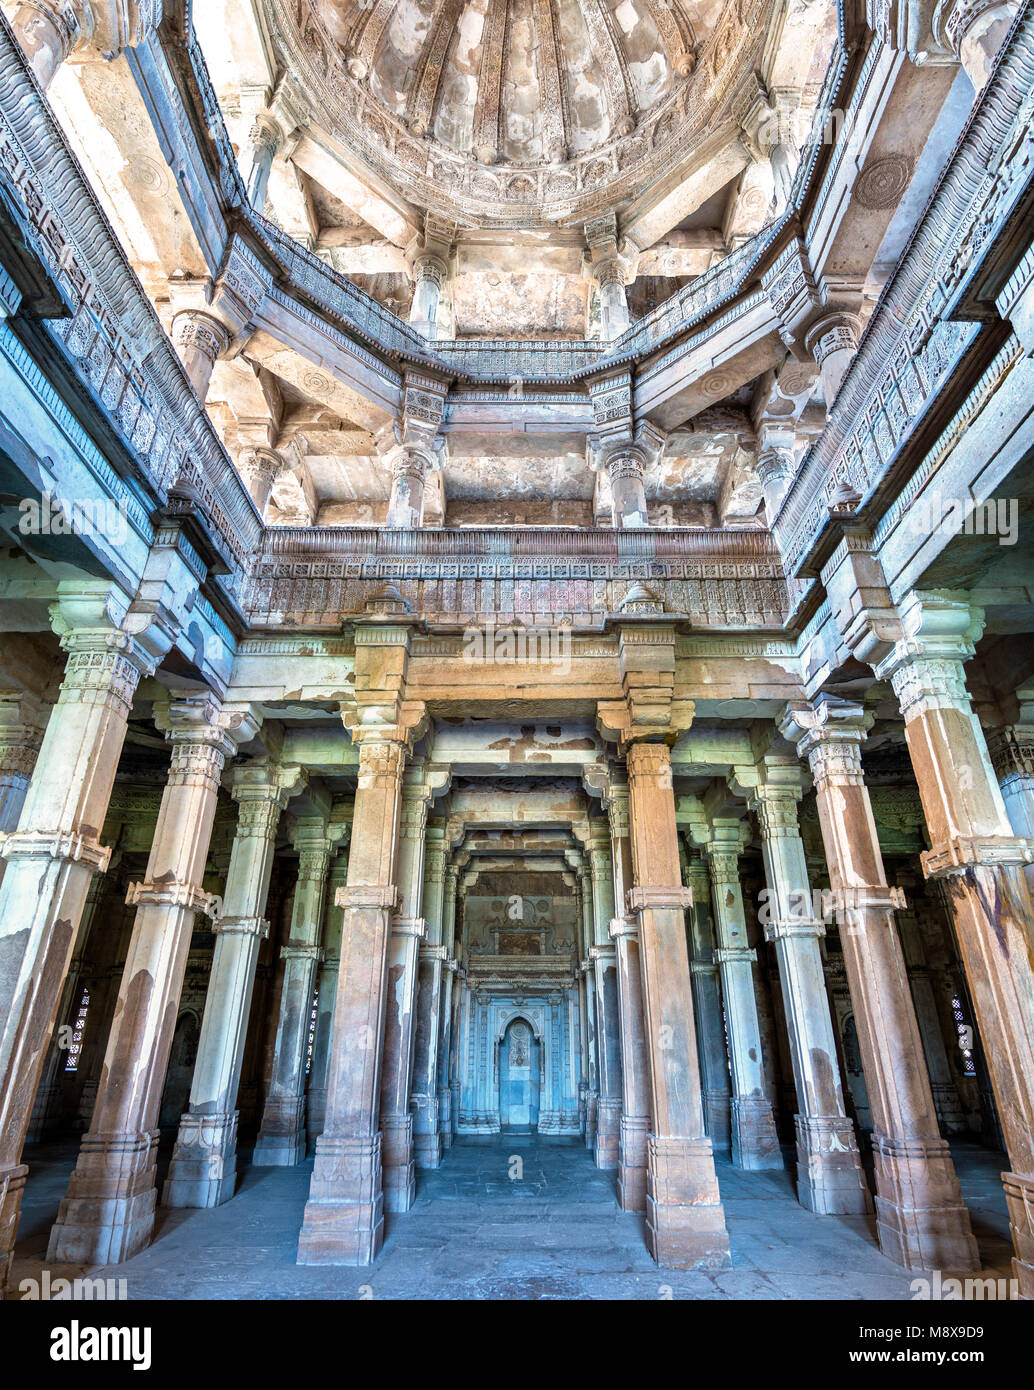 Intérieur de Jami Masjid, une attraction touristique au Parc archéologique de Champaner-Pavagadh - de l'état du Gujarat en Inde Banque D'Images